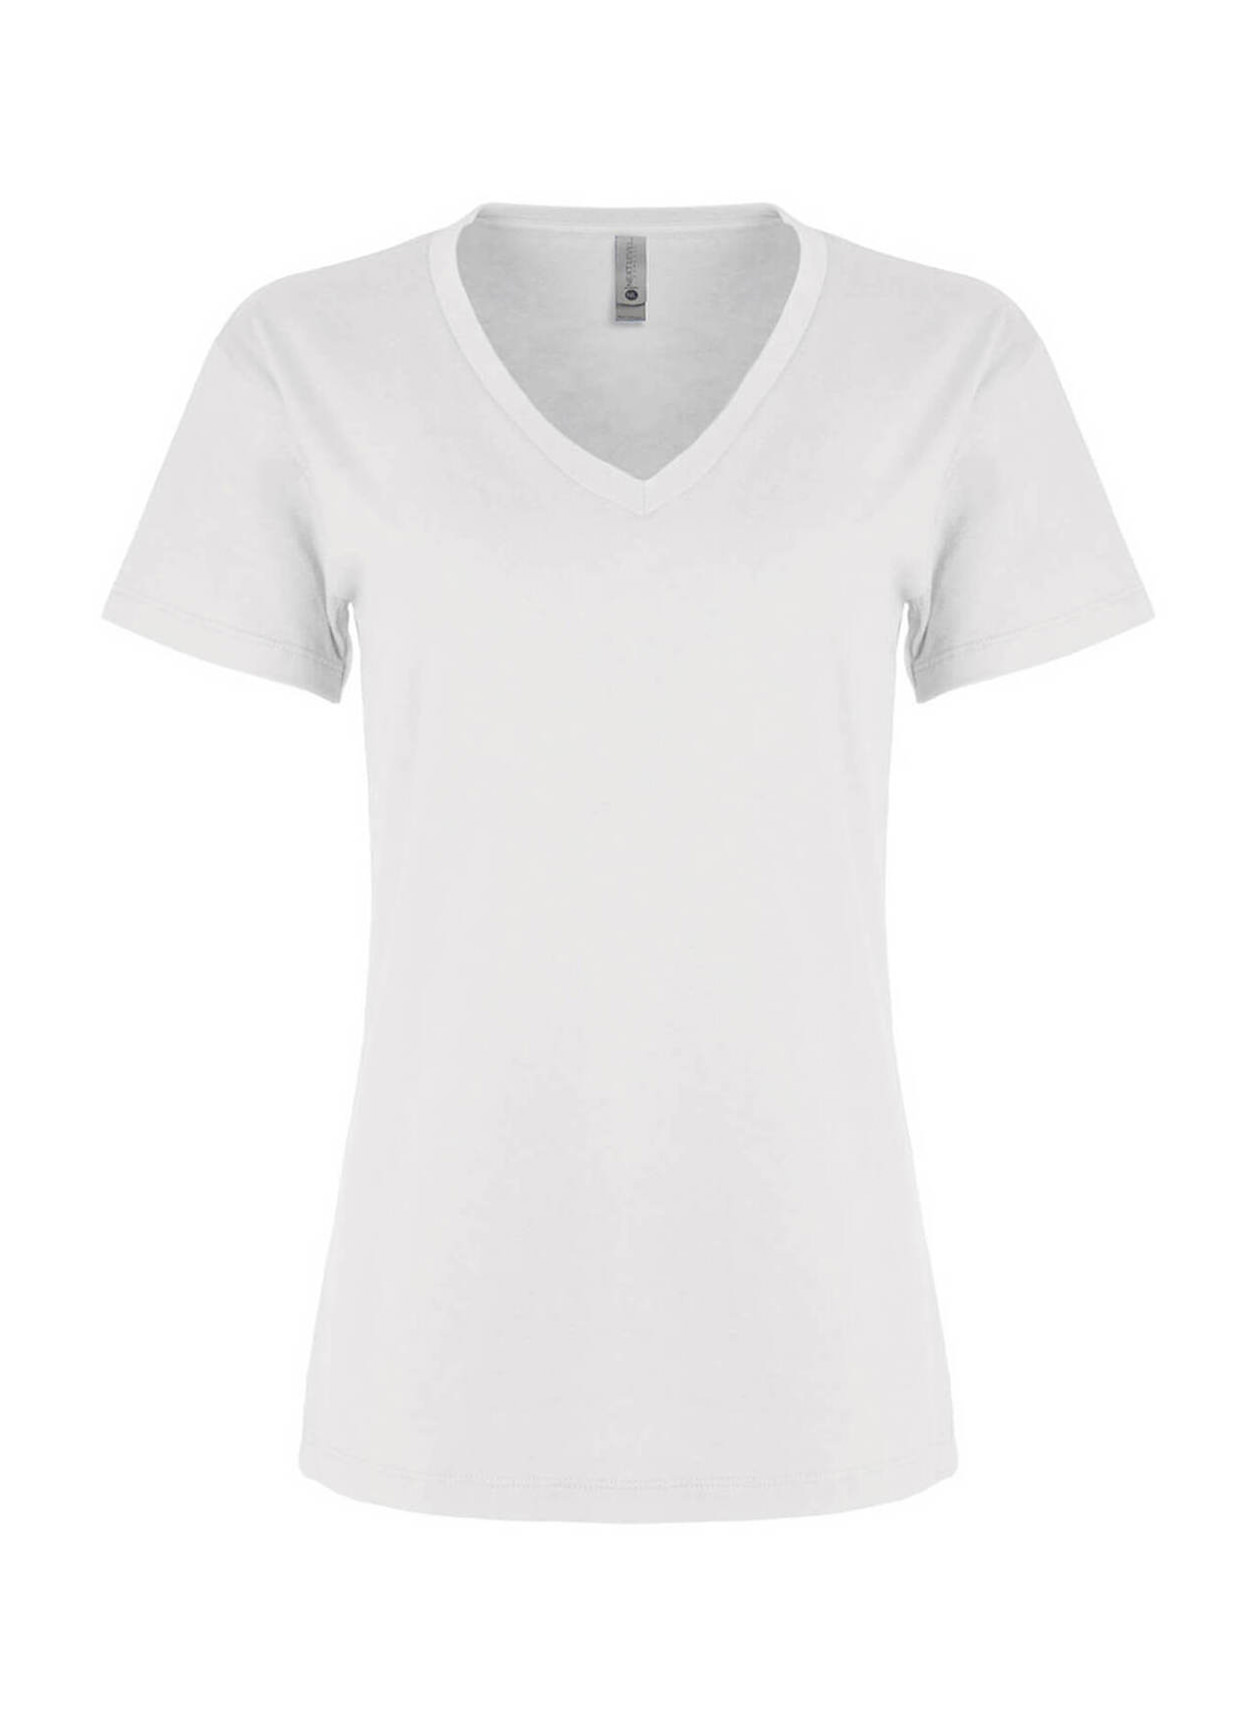 Next Level Women's White Relaxed V-Neck T-Shirt